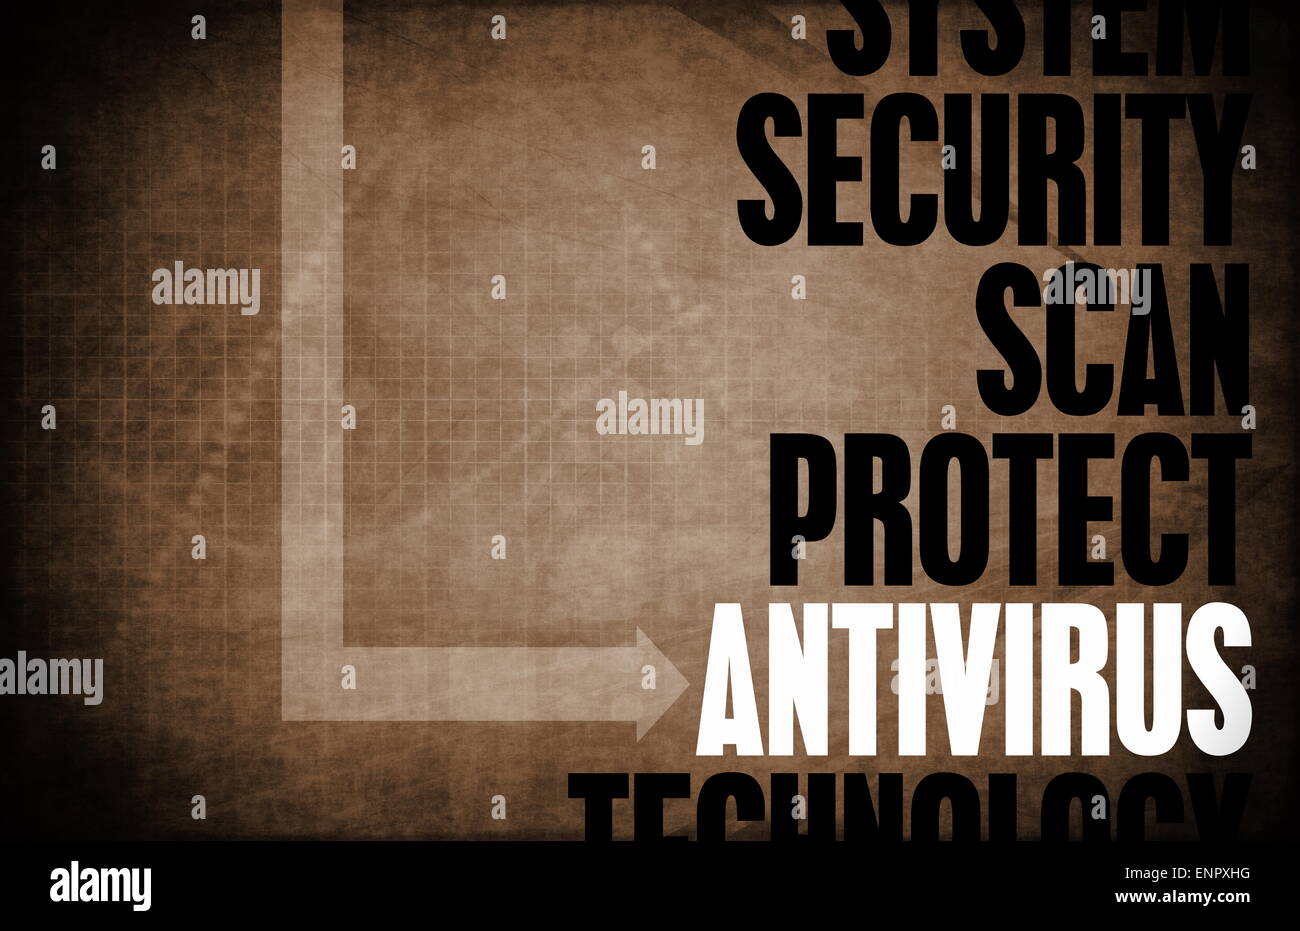 Antivirus principi fondamentali come un concetto astratto Foto Stock